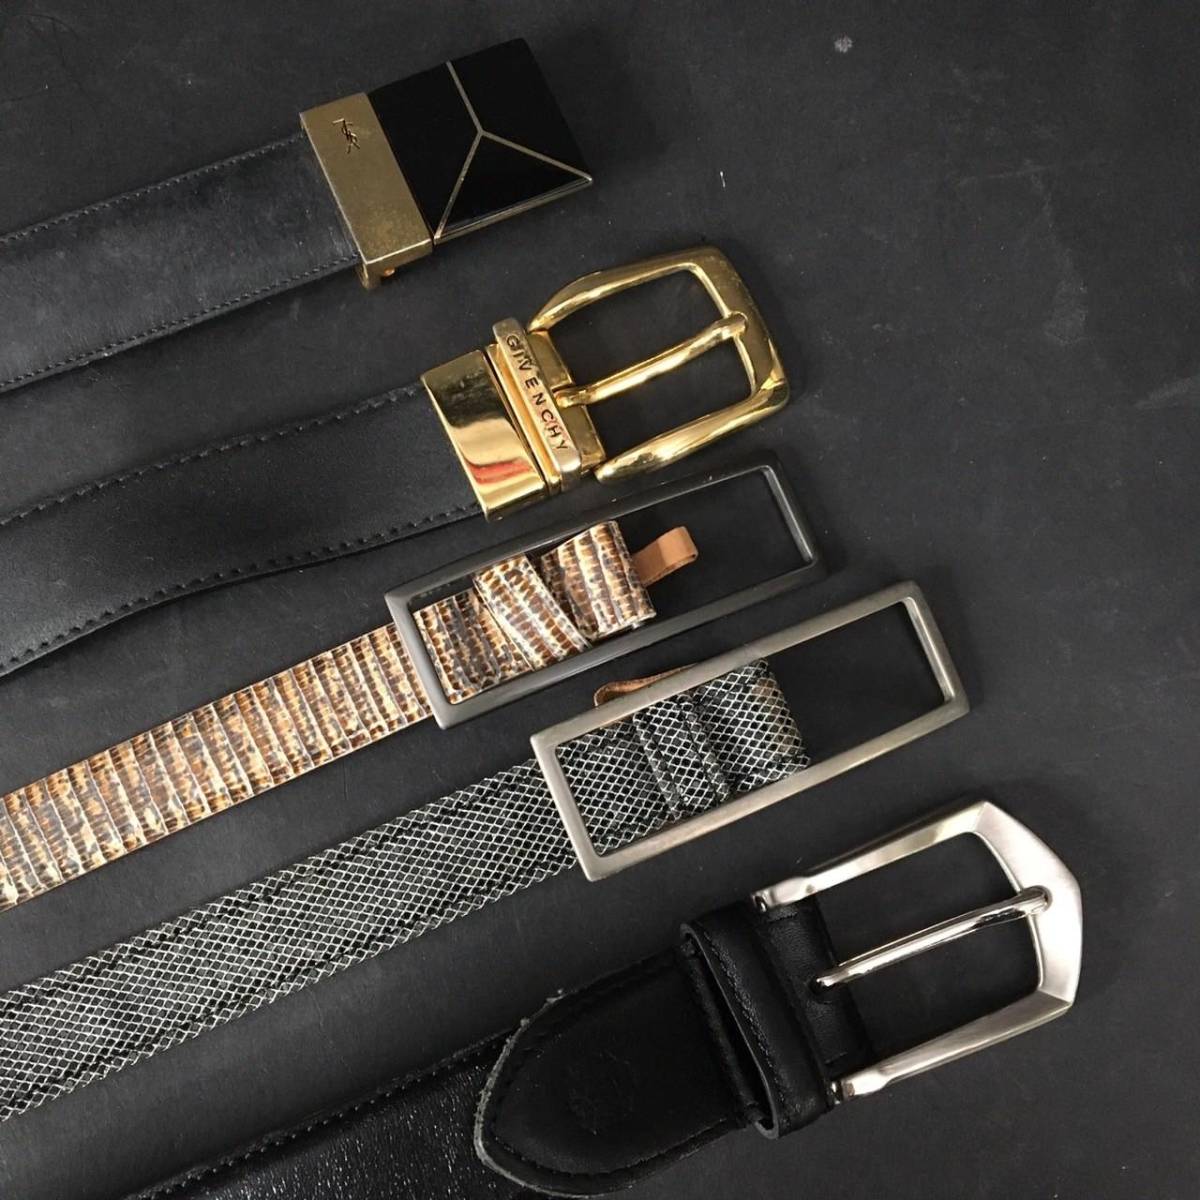 ER1123-41-3 Armani Takeo Kikuchi YSL Givenchy other leather belt 5ps.@ summarize 60 size 